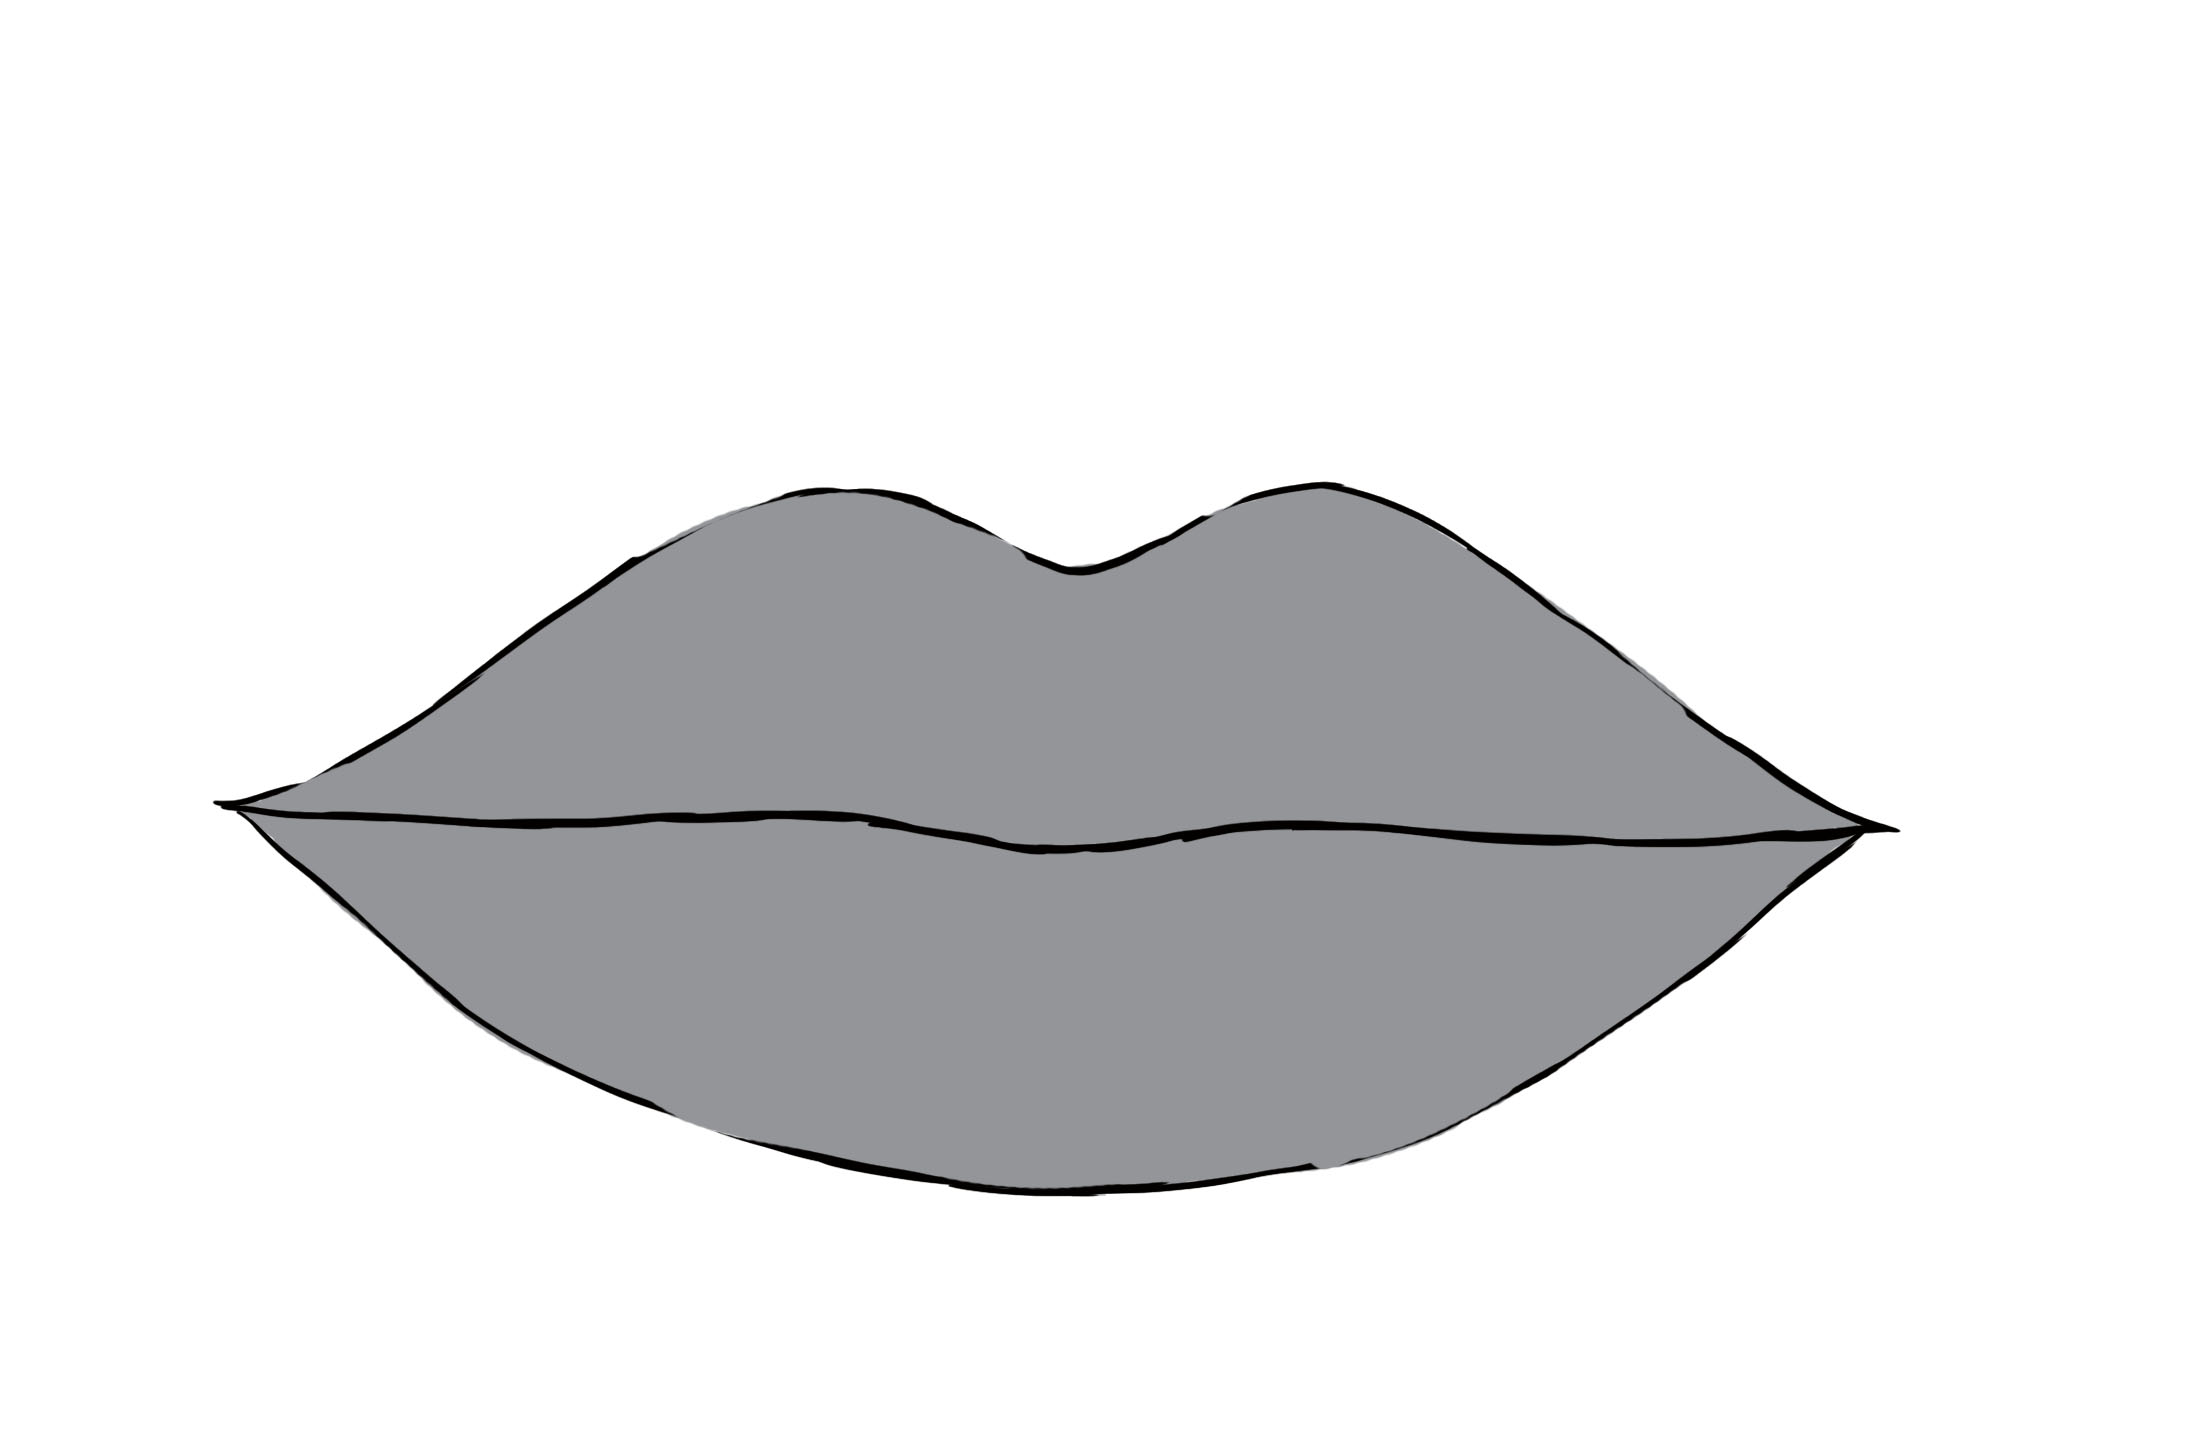 appliquer une couleur grise au dessin de bouche